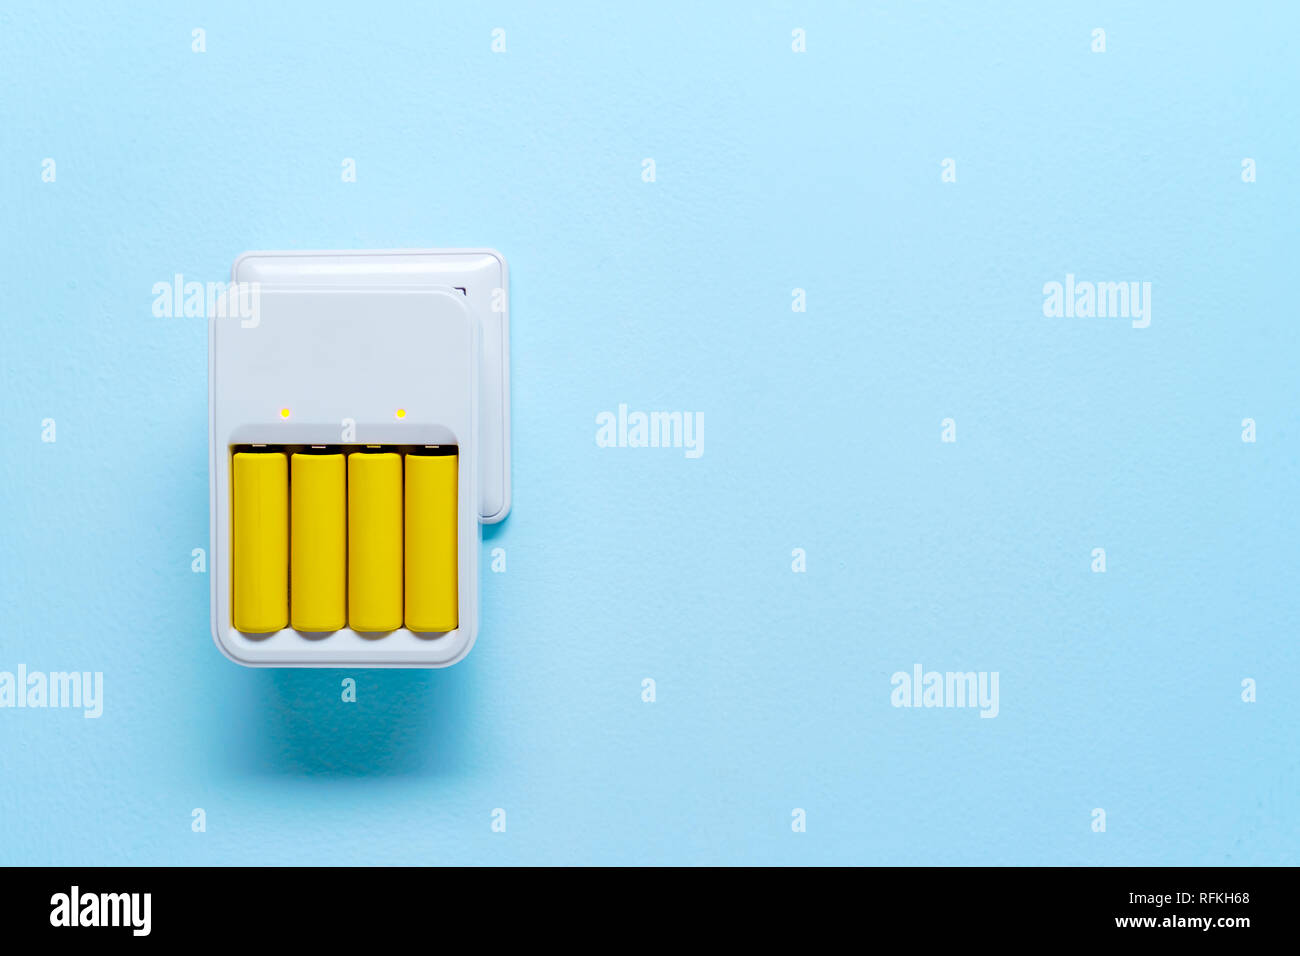 Immagine di un caricabatterie con batterie di colore giallo Foto Stock